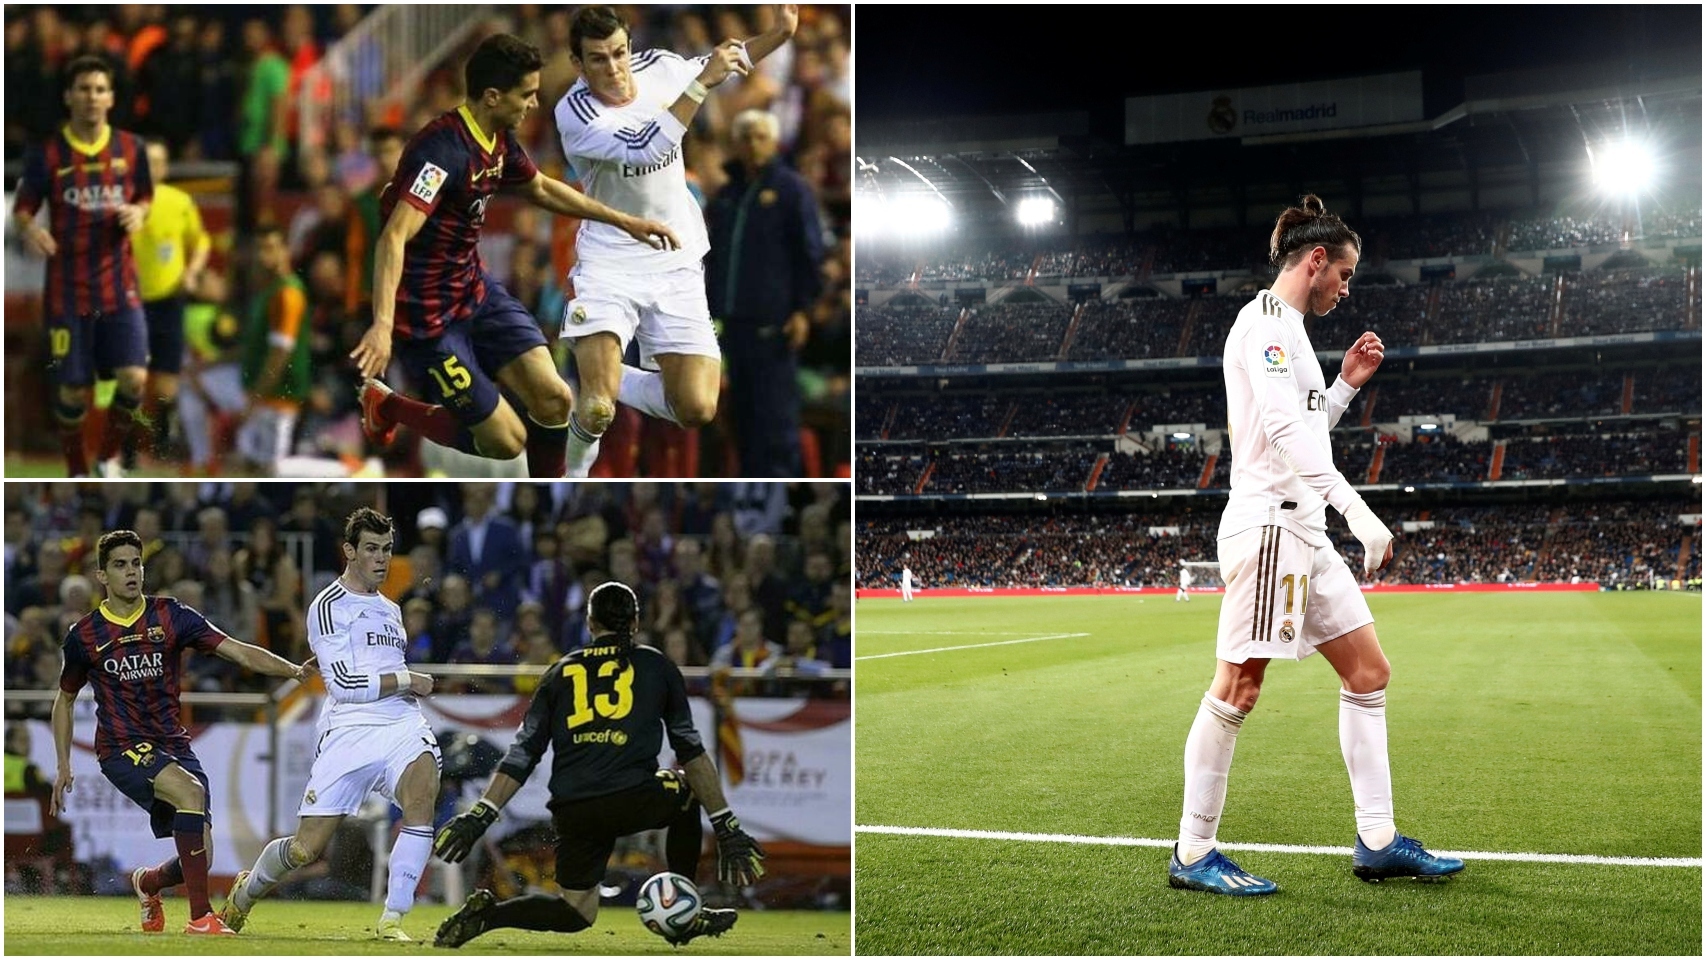 Seis años de la carrera de Bale en Mestalla